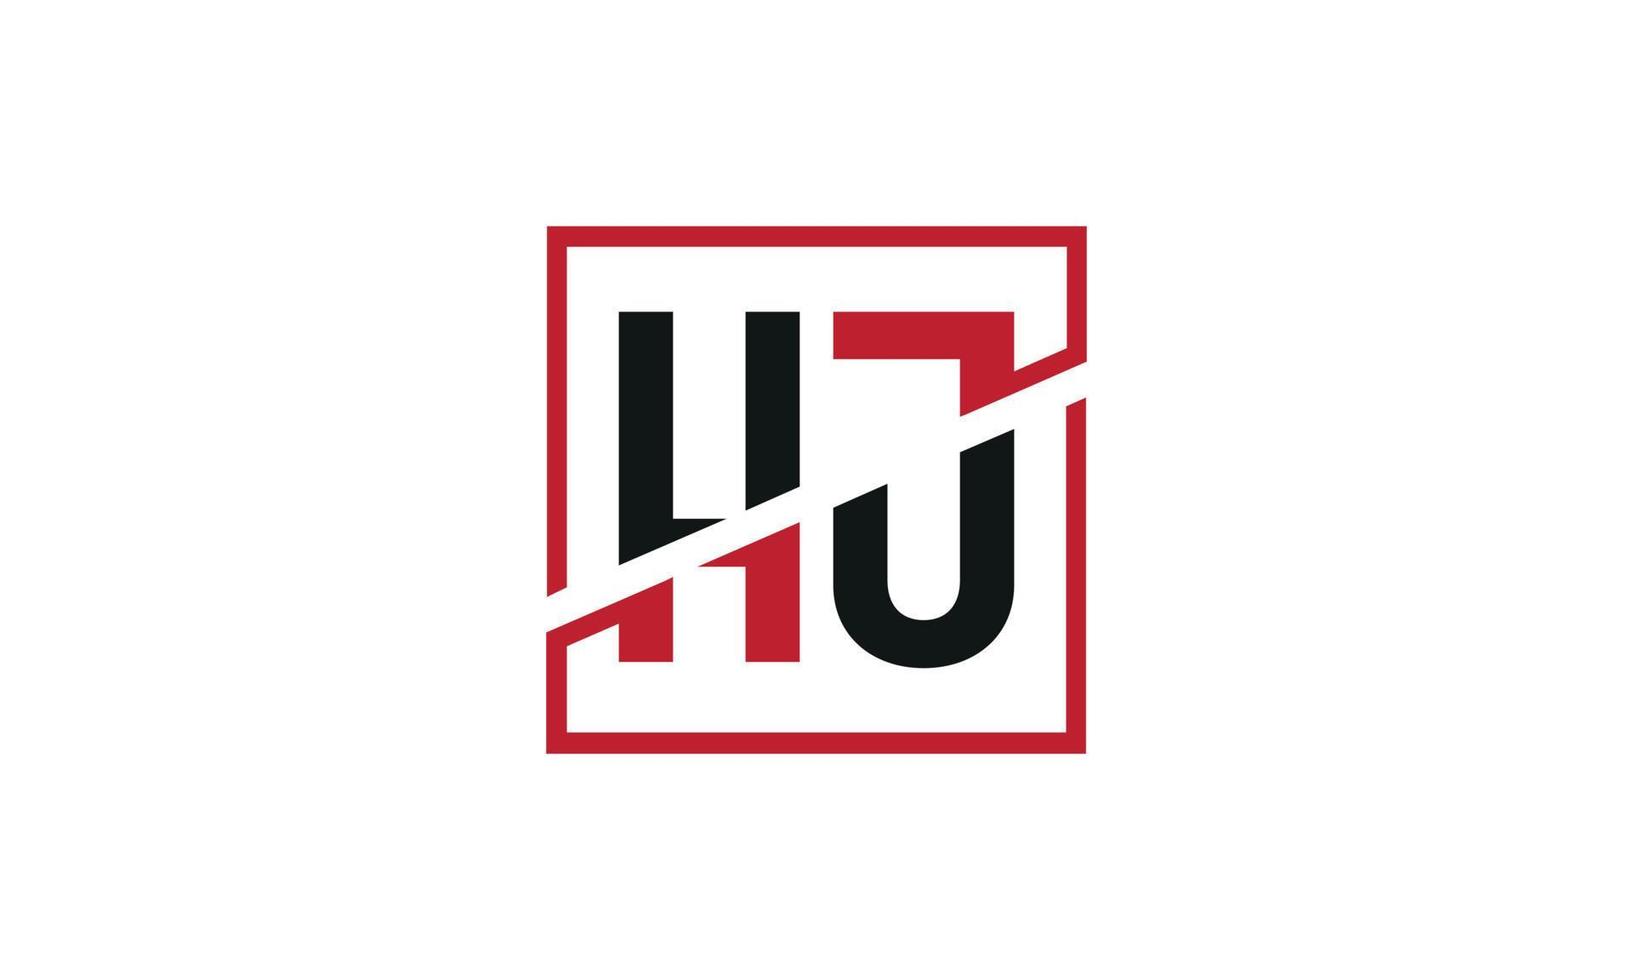 création de logo hj. conception initiale du monogramme du logo de la lettre hj en noir et rouge avec une forme carrée. vecteur professionnel